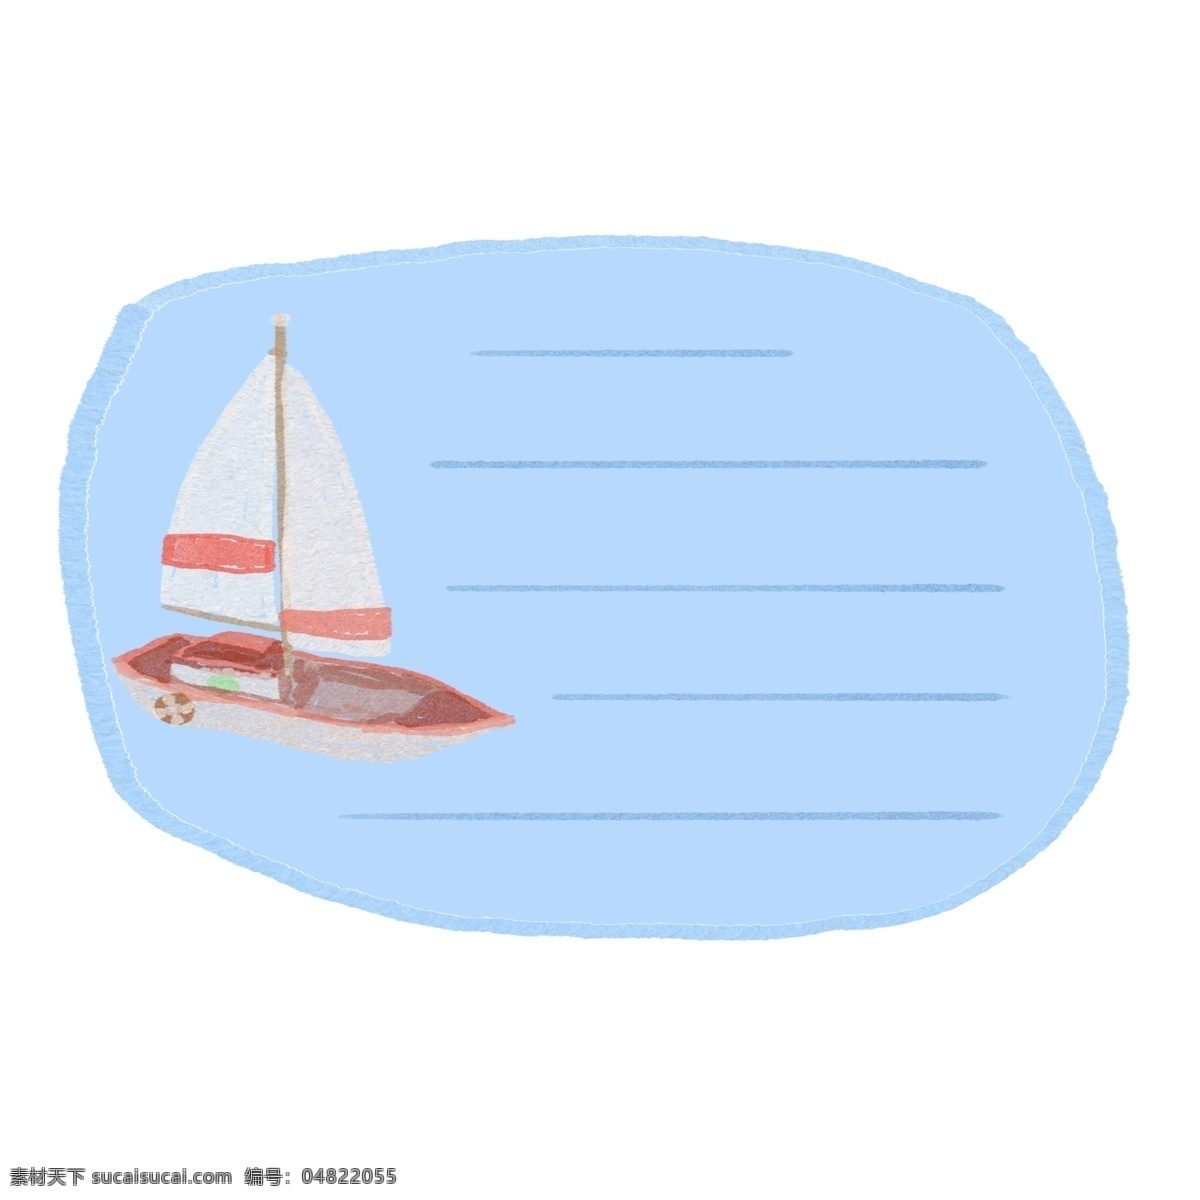 手绘 蜡笔 卡通 帆船 提示 边框 对话框 元素